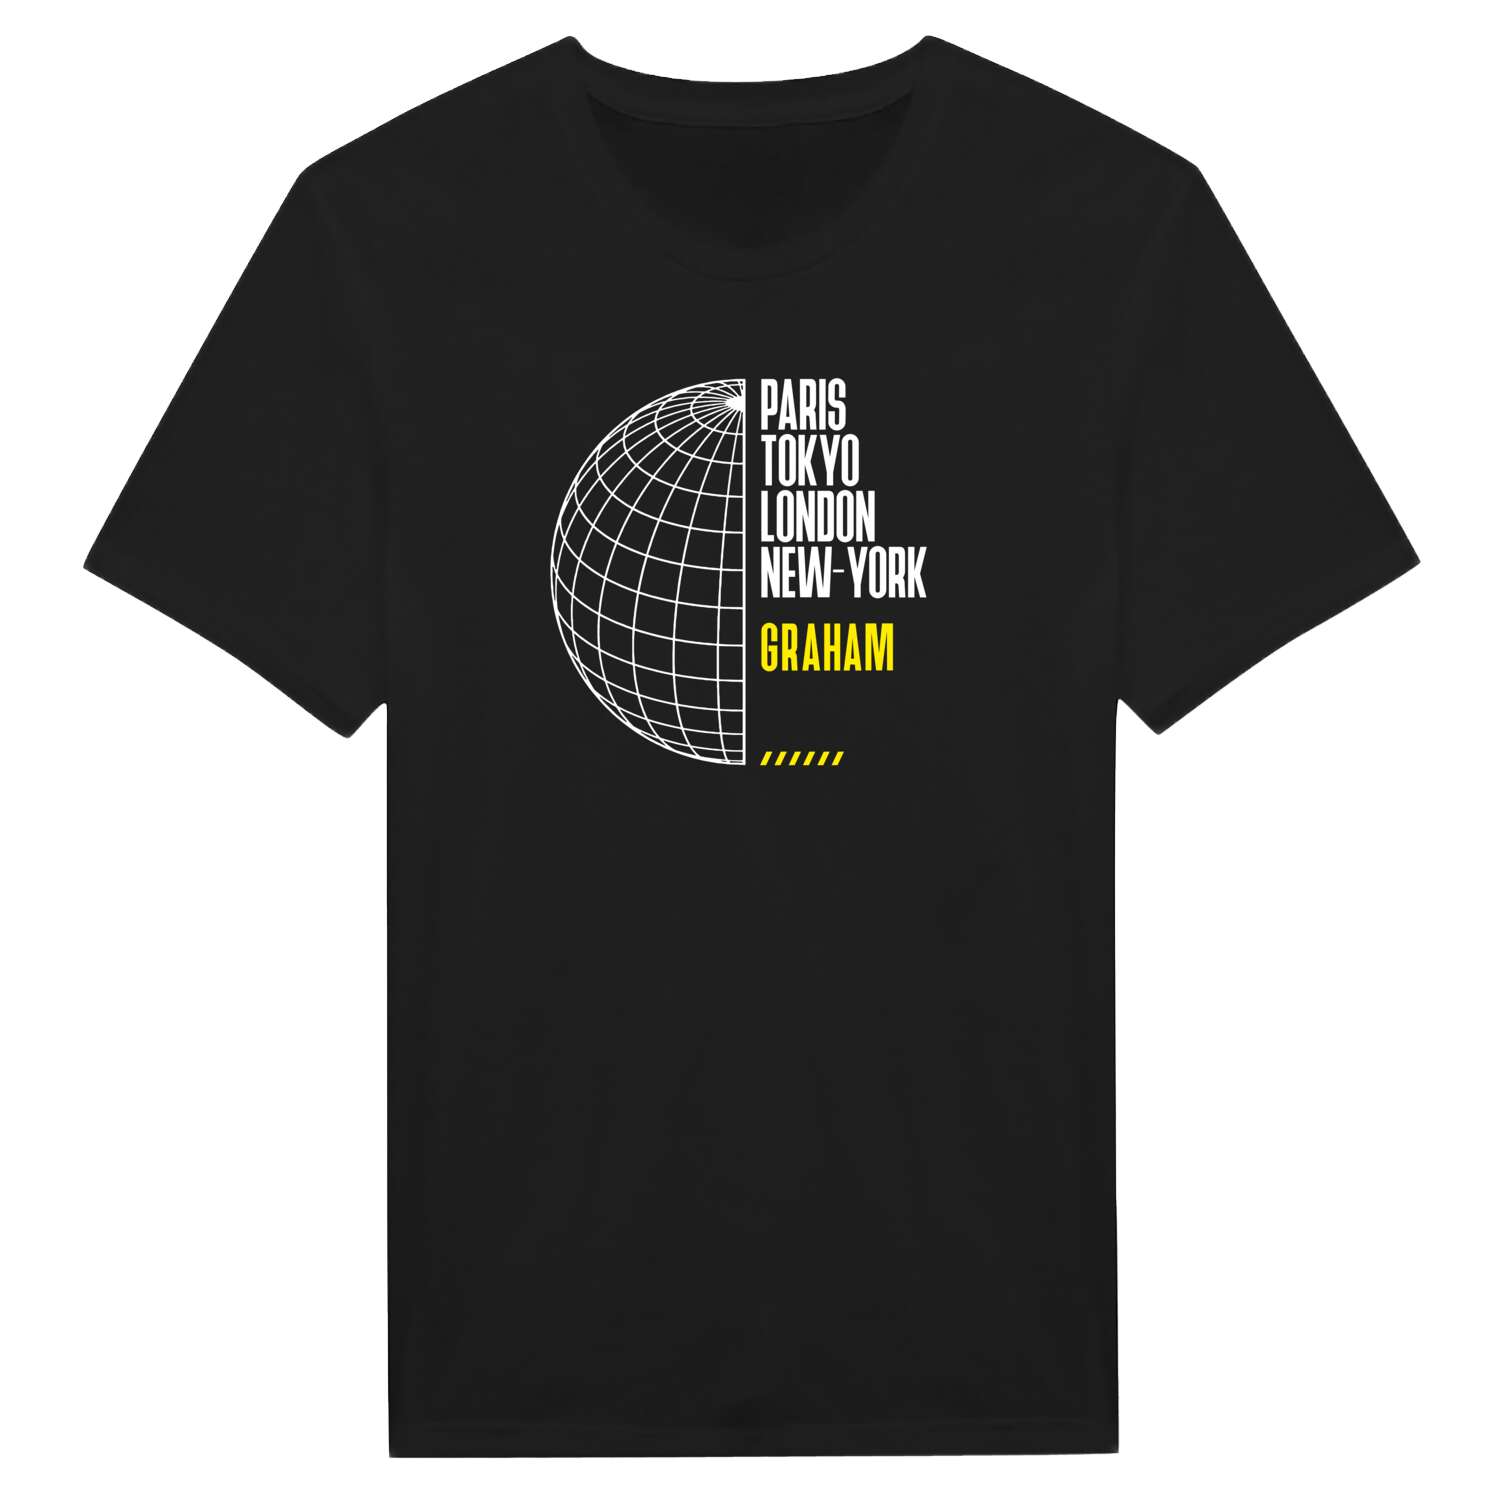 Graham T-Shirt »Paris Tokyo London«